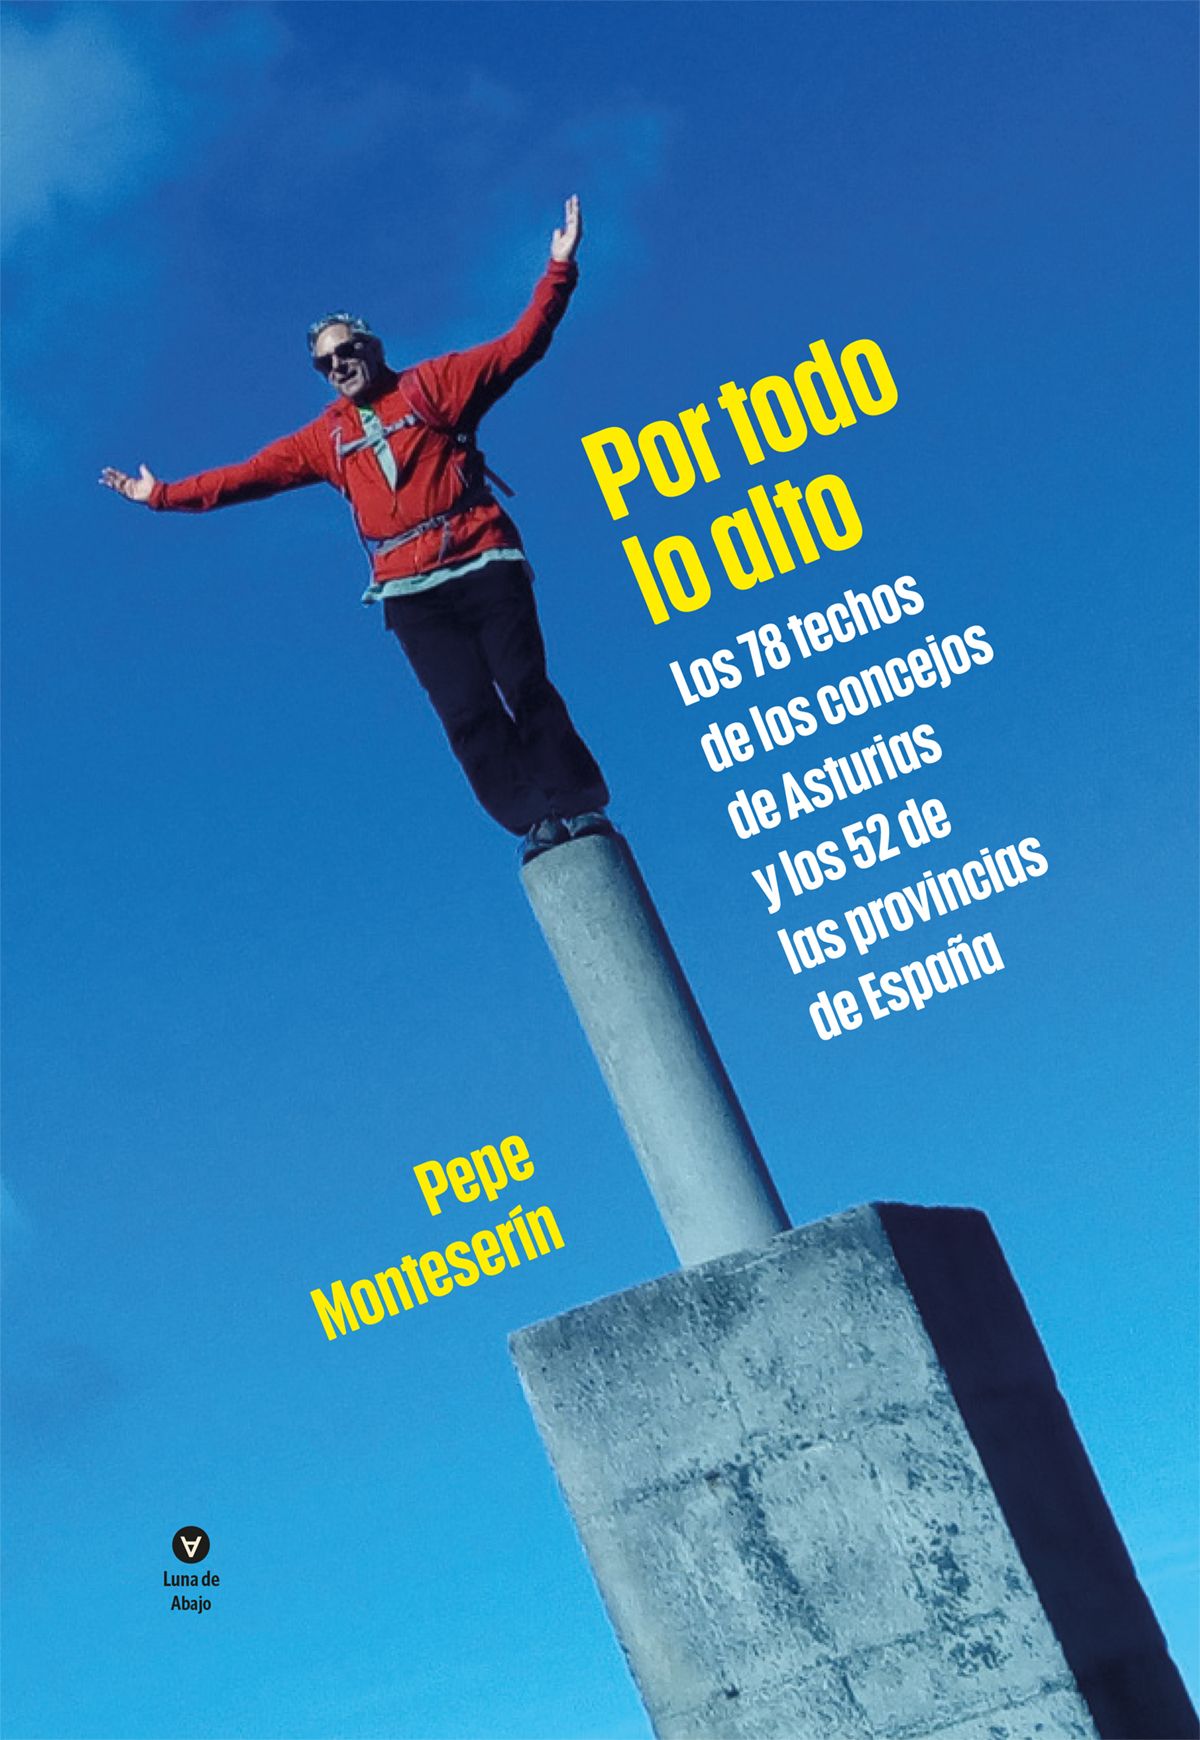 Cumbres alcanzadas por Pepe Monteserín recogidas en su libro "Por todo lo alto"